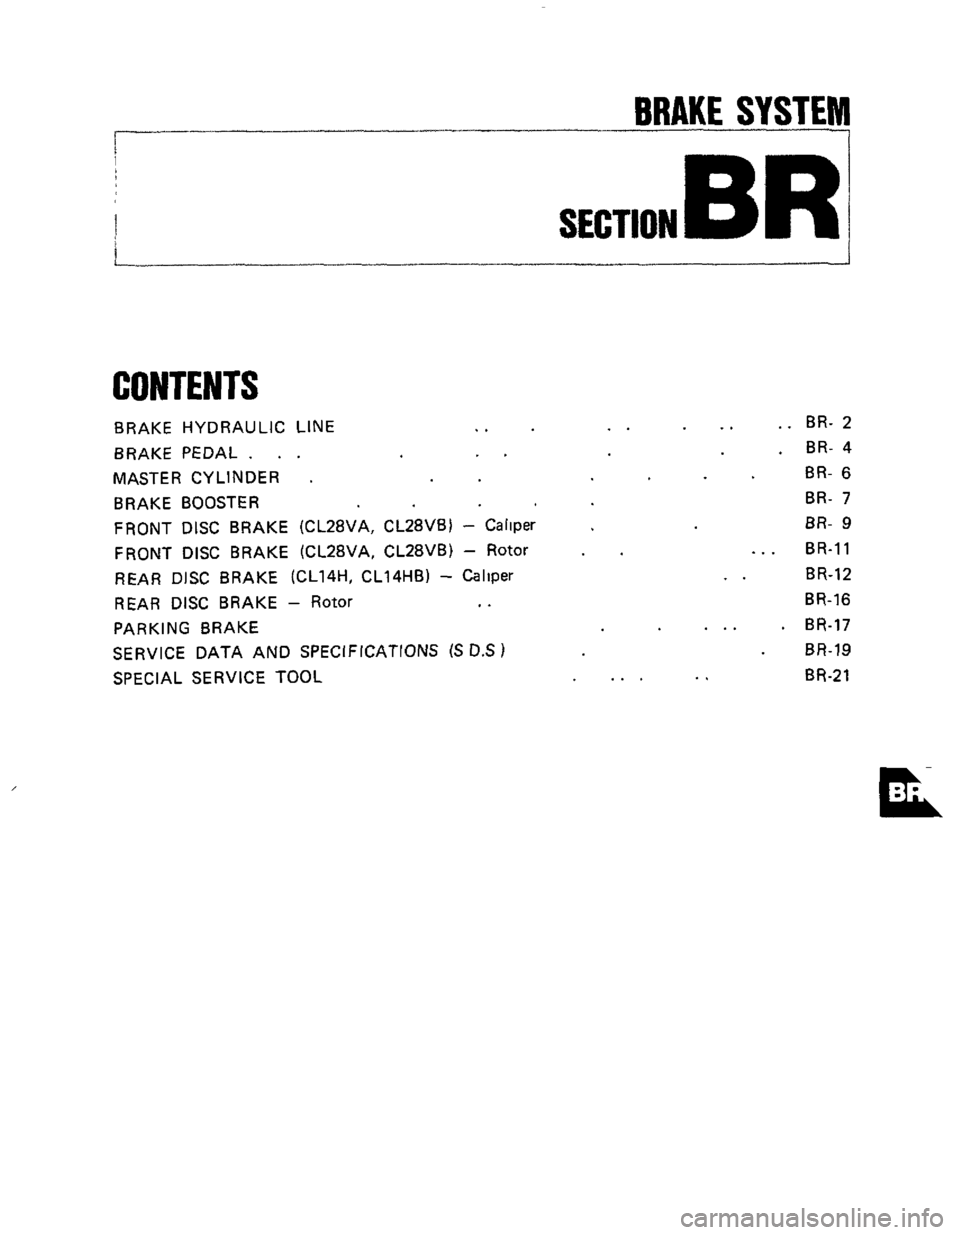 NISSAN 300ZX 1984 Z31 Brake System Workshop Manual BRAKE SYSTEM 
P 7- I 
SECTION BR 
CONTENTS 
BRAKE HYDRAULIC  LINE .. 
BRAKE PEDAL. .  .  .. 
MASTER CYLINDER . 
BRAKE BOOSTER 
FRONT DISC BRAKE  (CL28VA,  CL28VB) - Rotor 
REAR DISC BRAKE  (CL14H, CL1